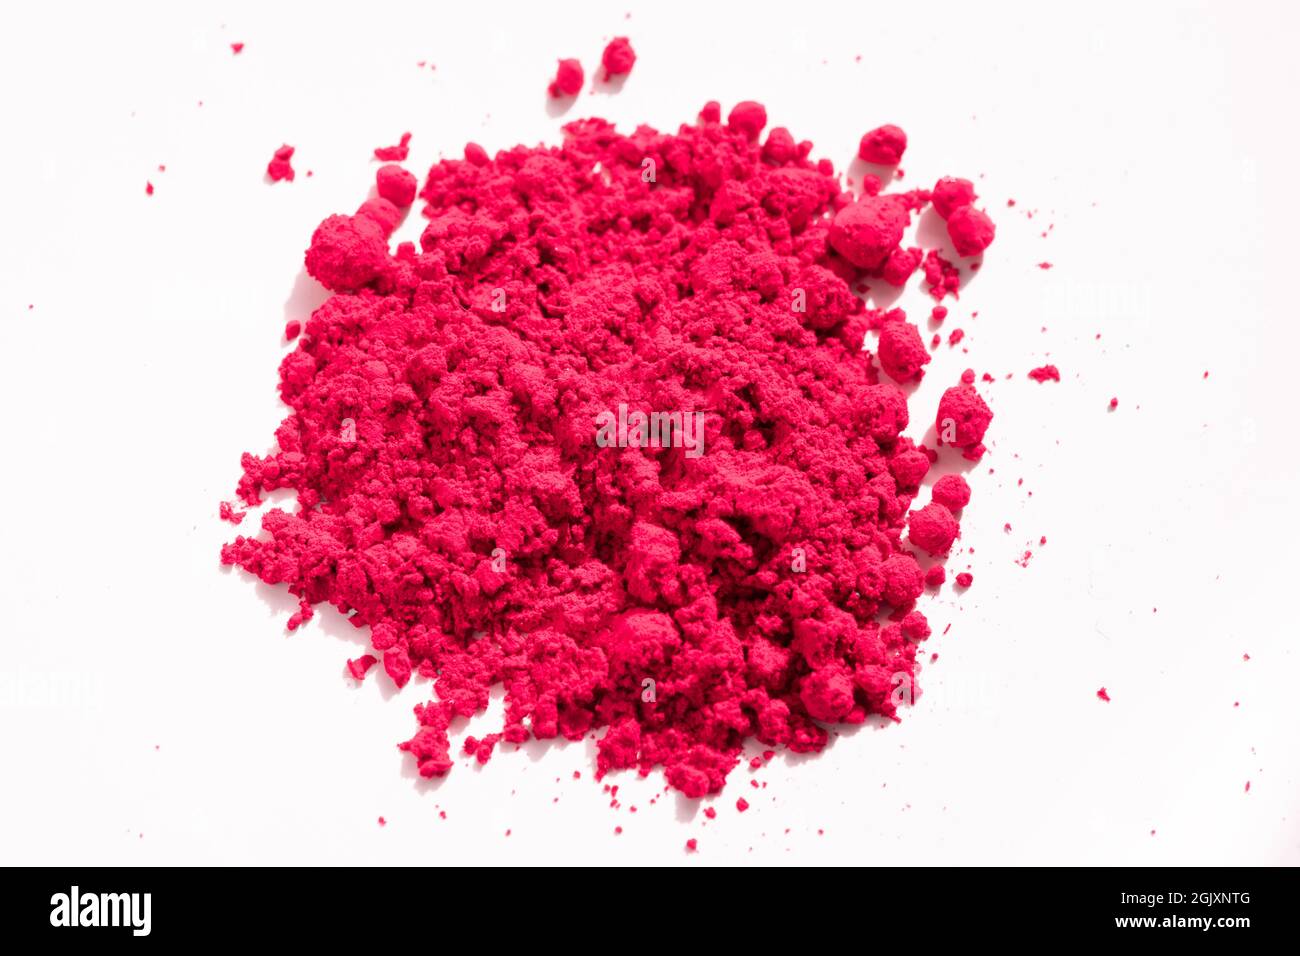 Nahaufnahme eines Teils des roten Pigments, das auf Weiß isoliert ist. Das Pigment kann als Basis für Make-up verwendet oder mit Leinöl gemischt werden, um Ölfarbe zu machen Stockfoto